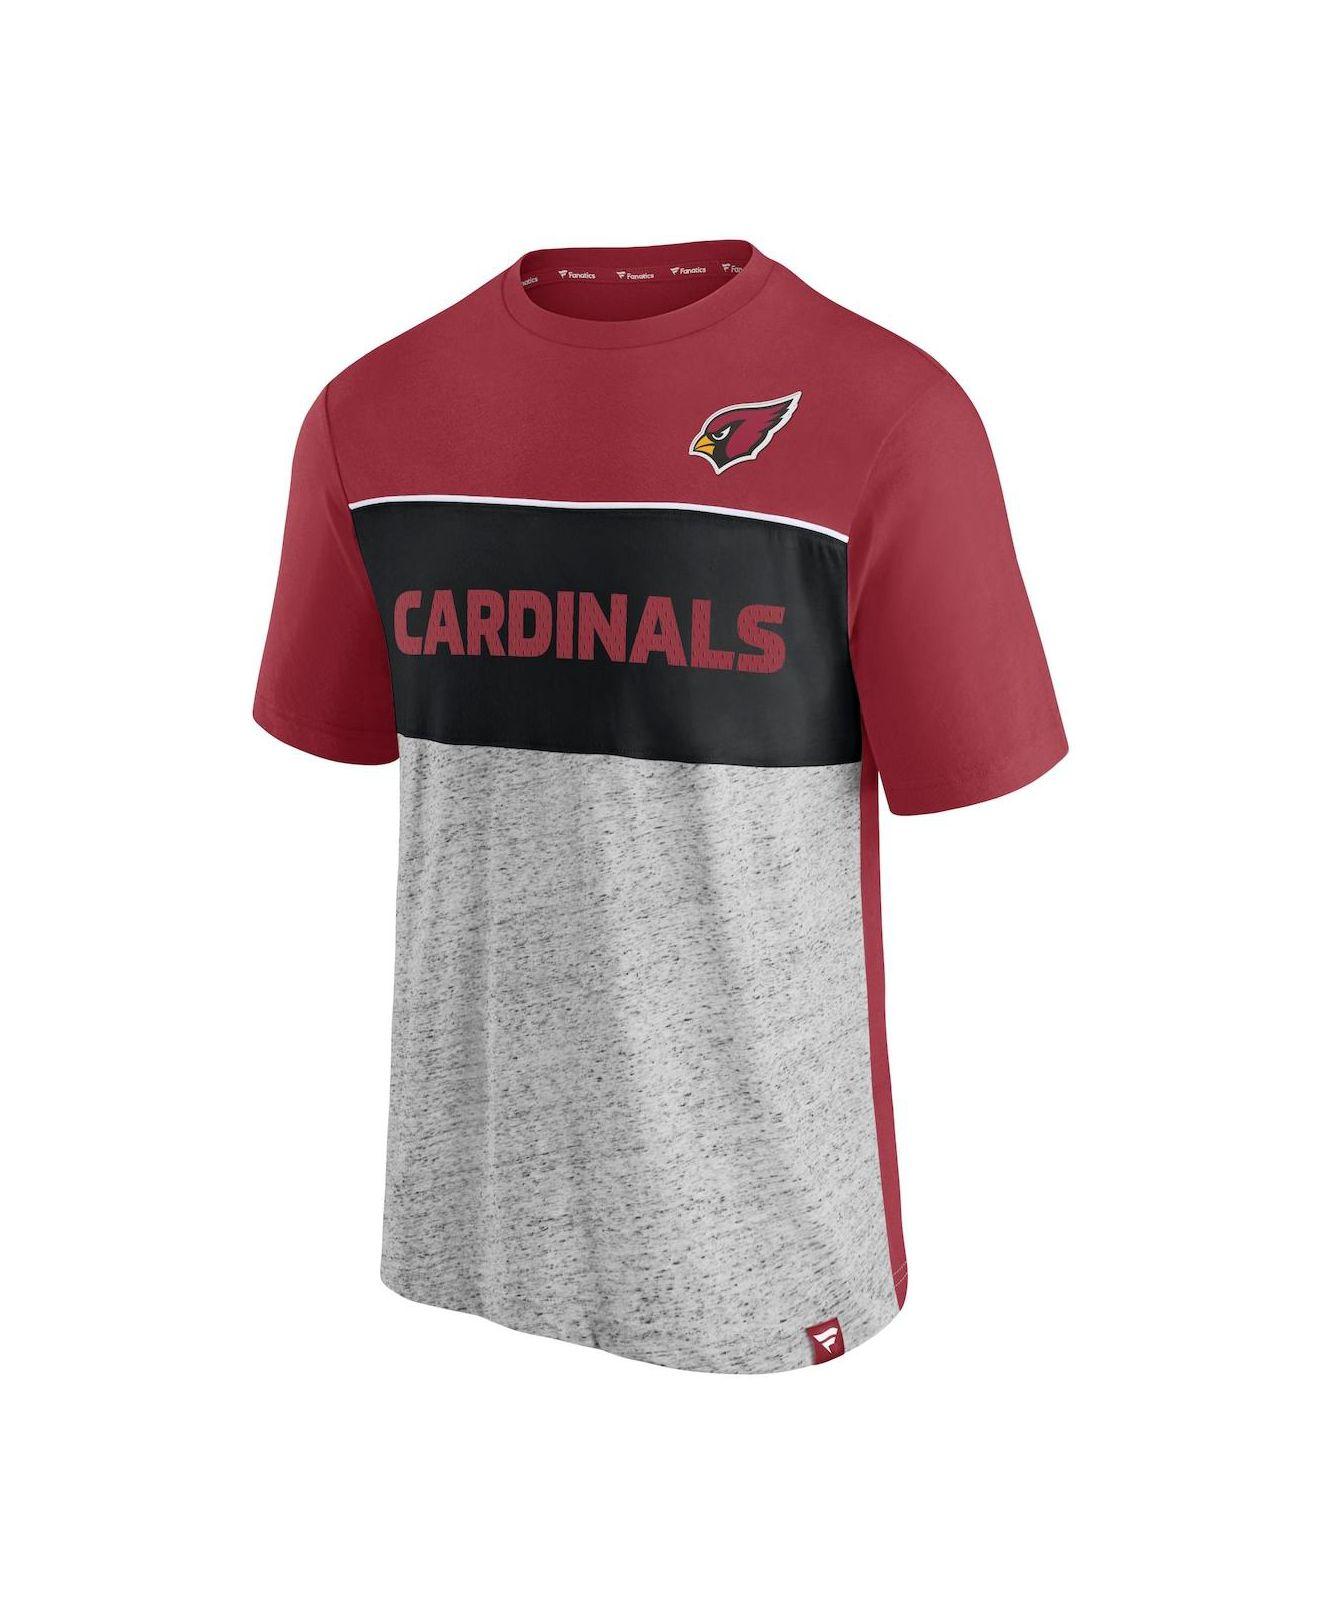 cardinals gray jersey